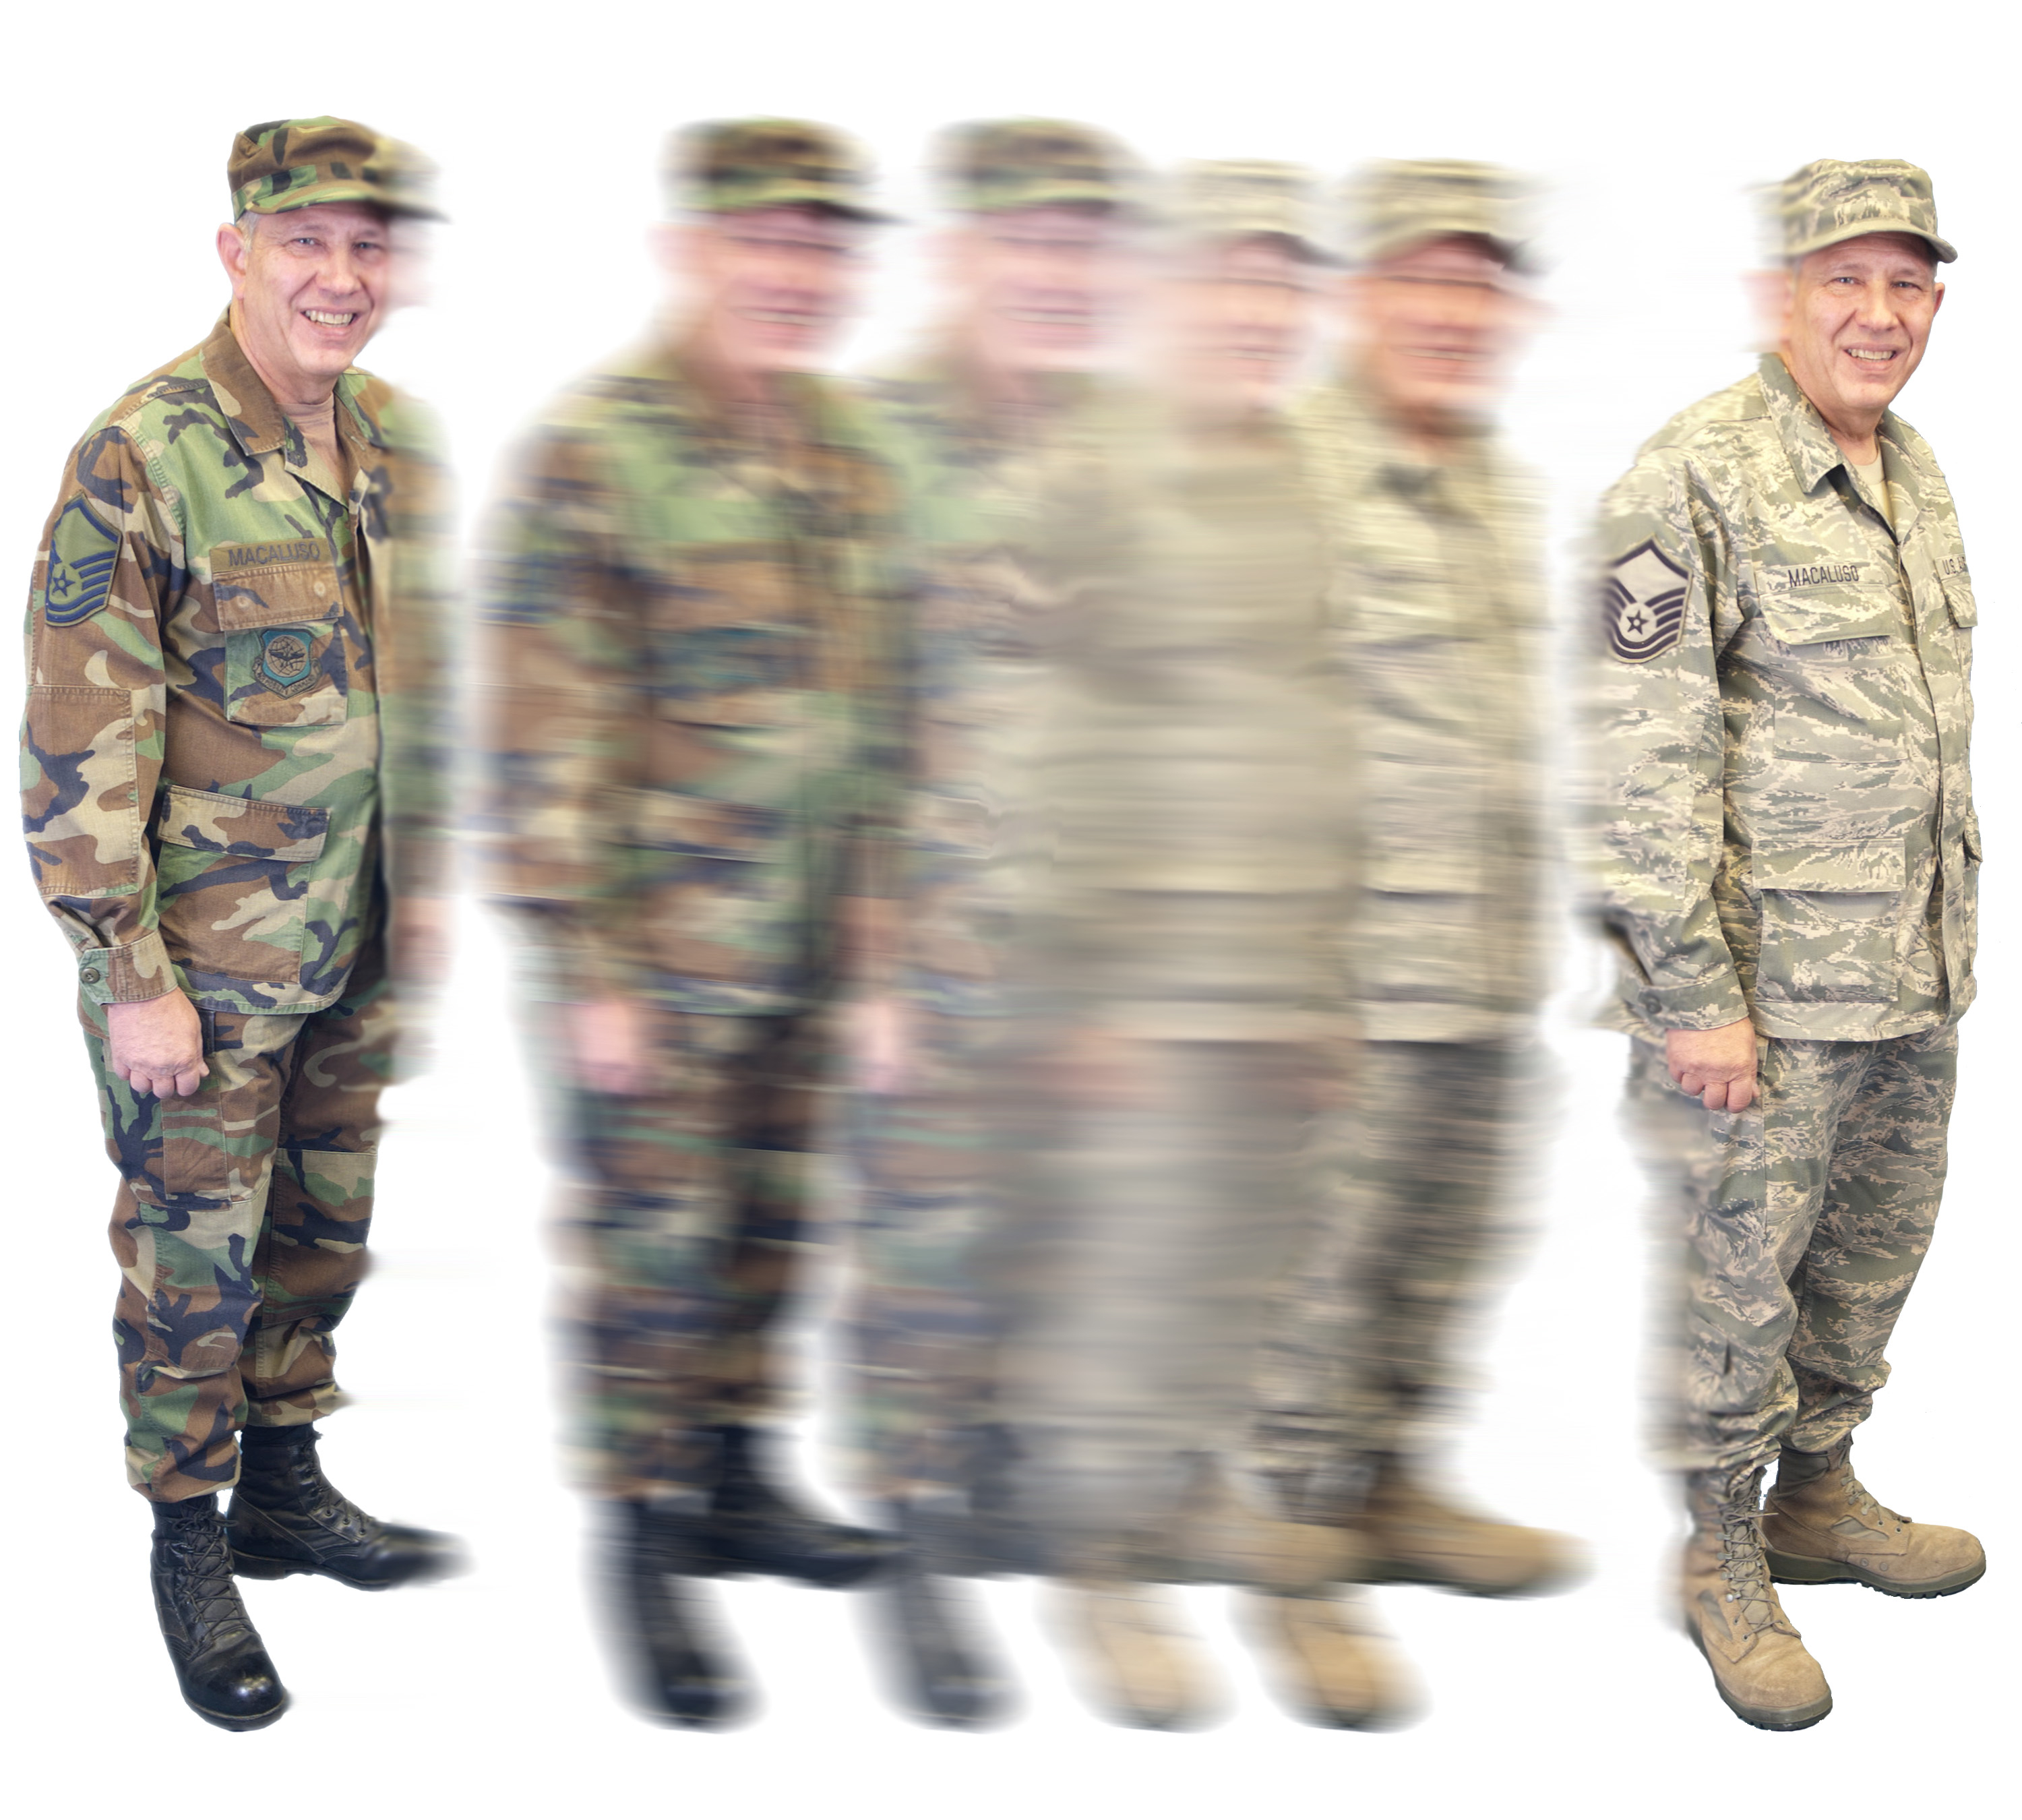 American Army Uniform History